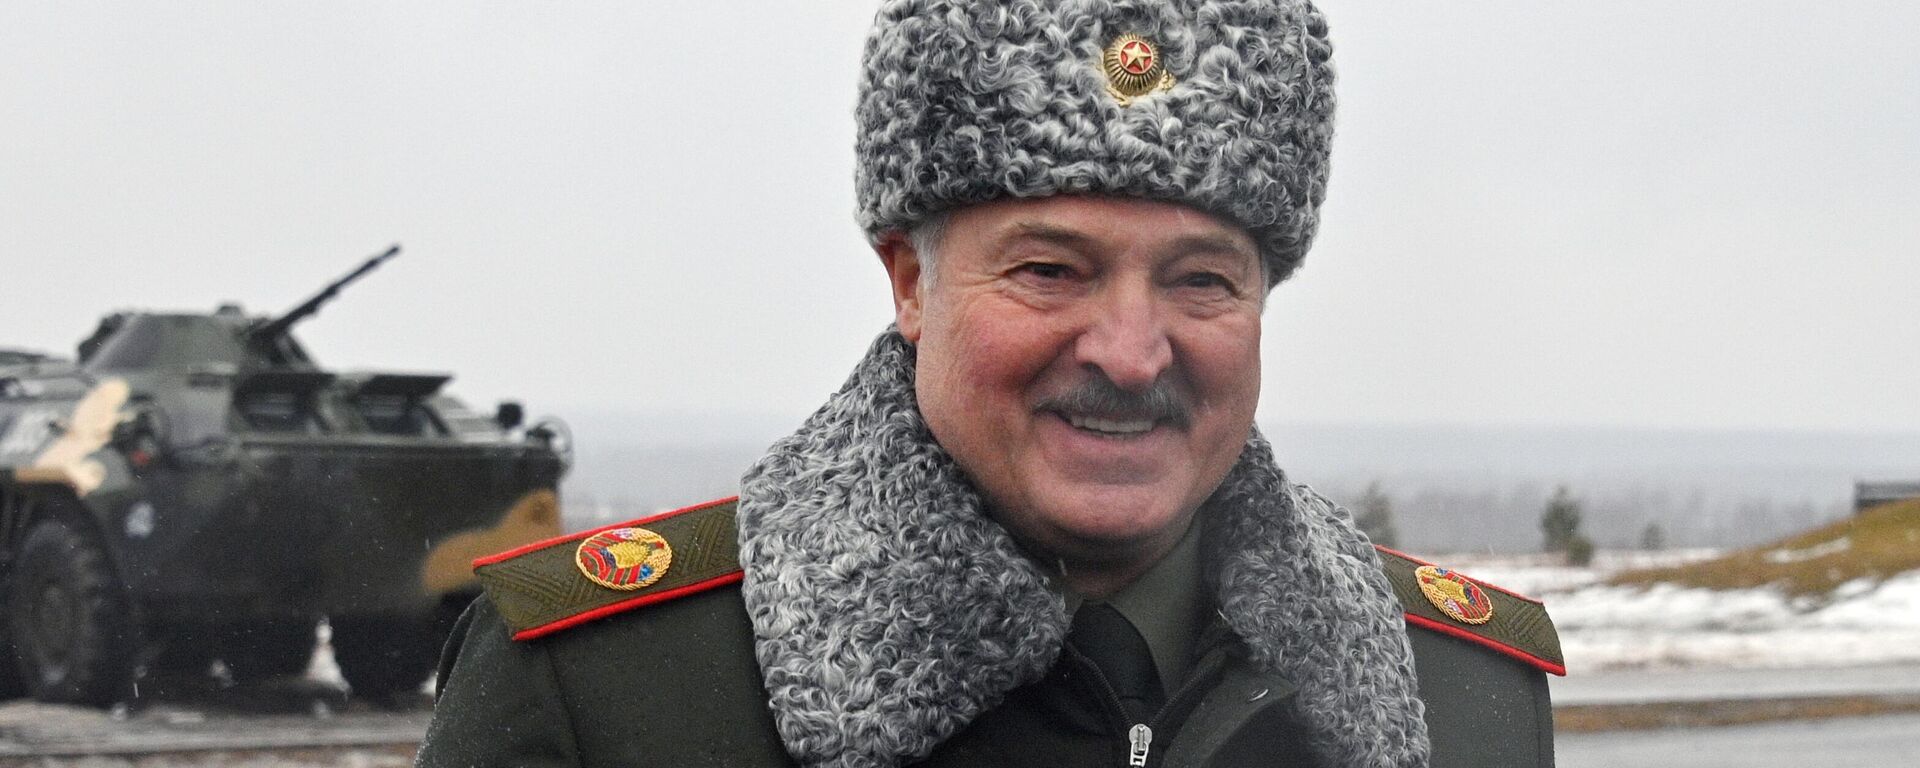 Stāvēs tik ilgi, cik vajadzēs: Lukašenko par Krievijas armijas izvešanu no Baltkrievijas - Sputnik Latvija, 1920, 18.02.2022